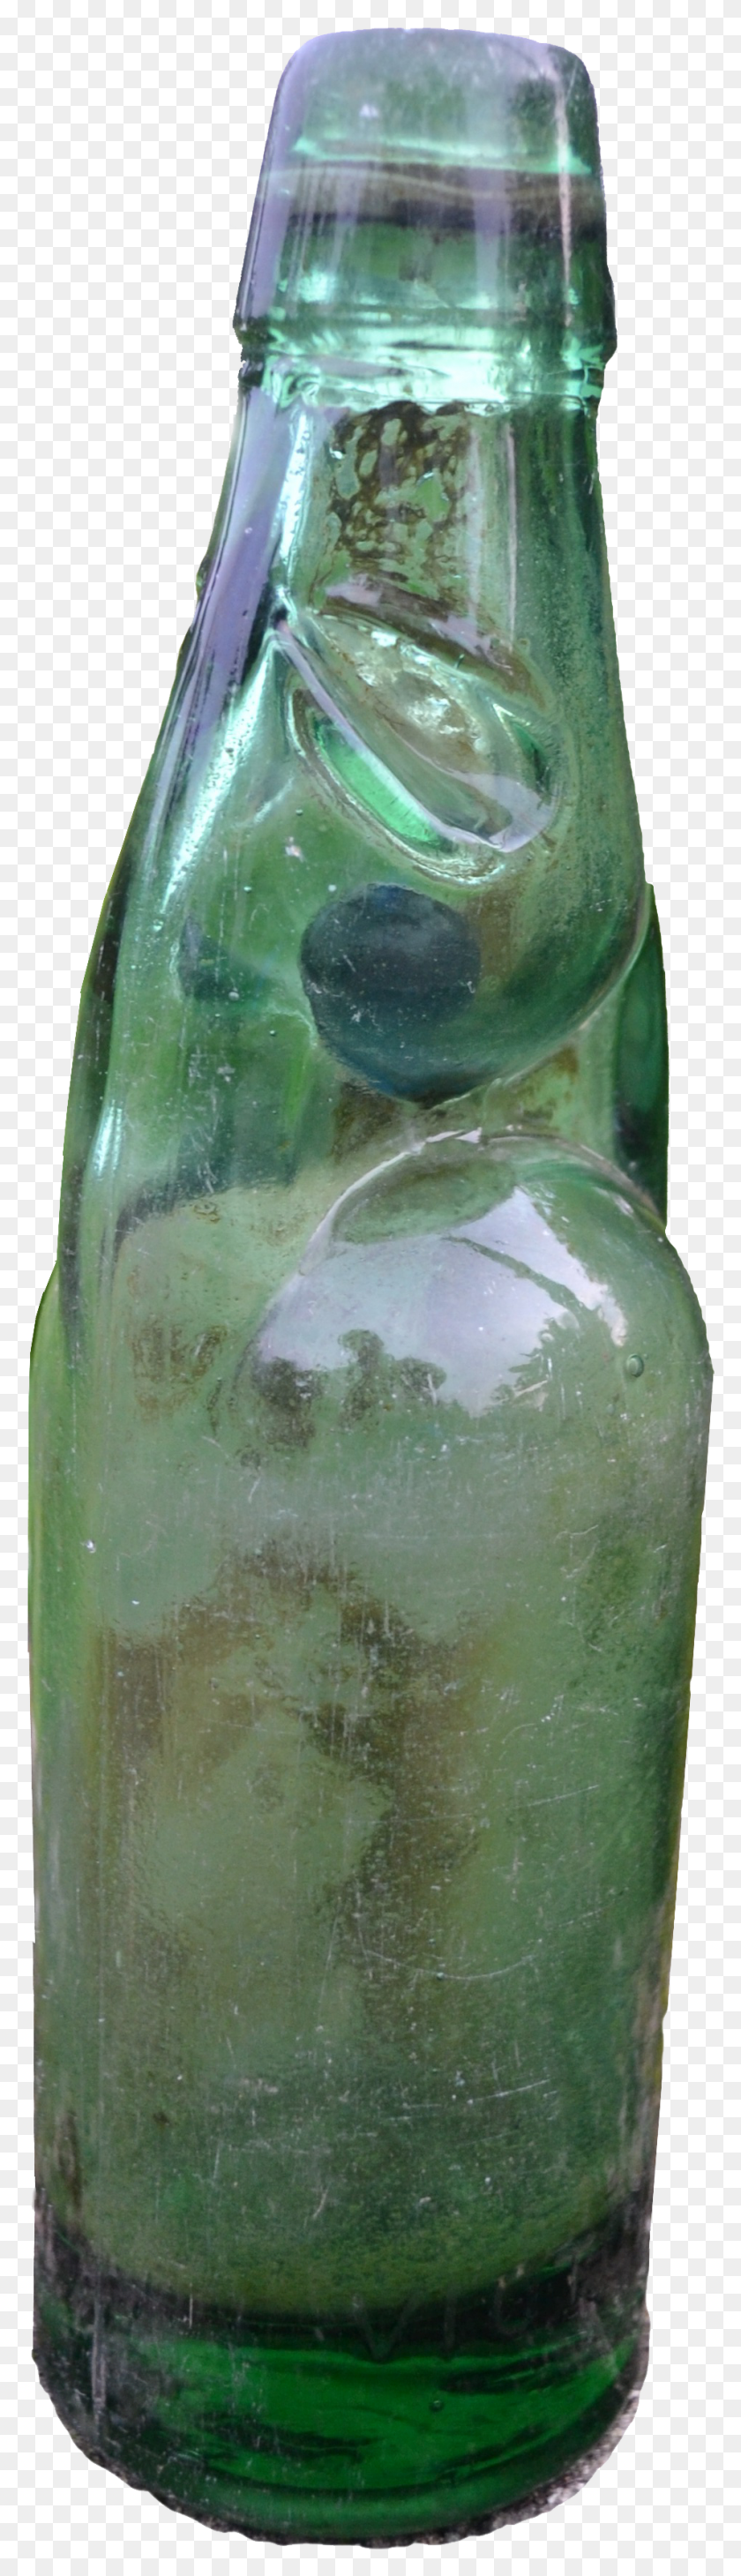 948x3477 Codd Neck Soda Water Bottle From Kerala Paneer Soda Bottle HD PNG Download